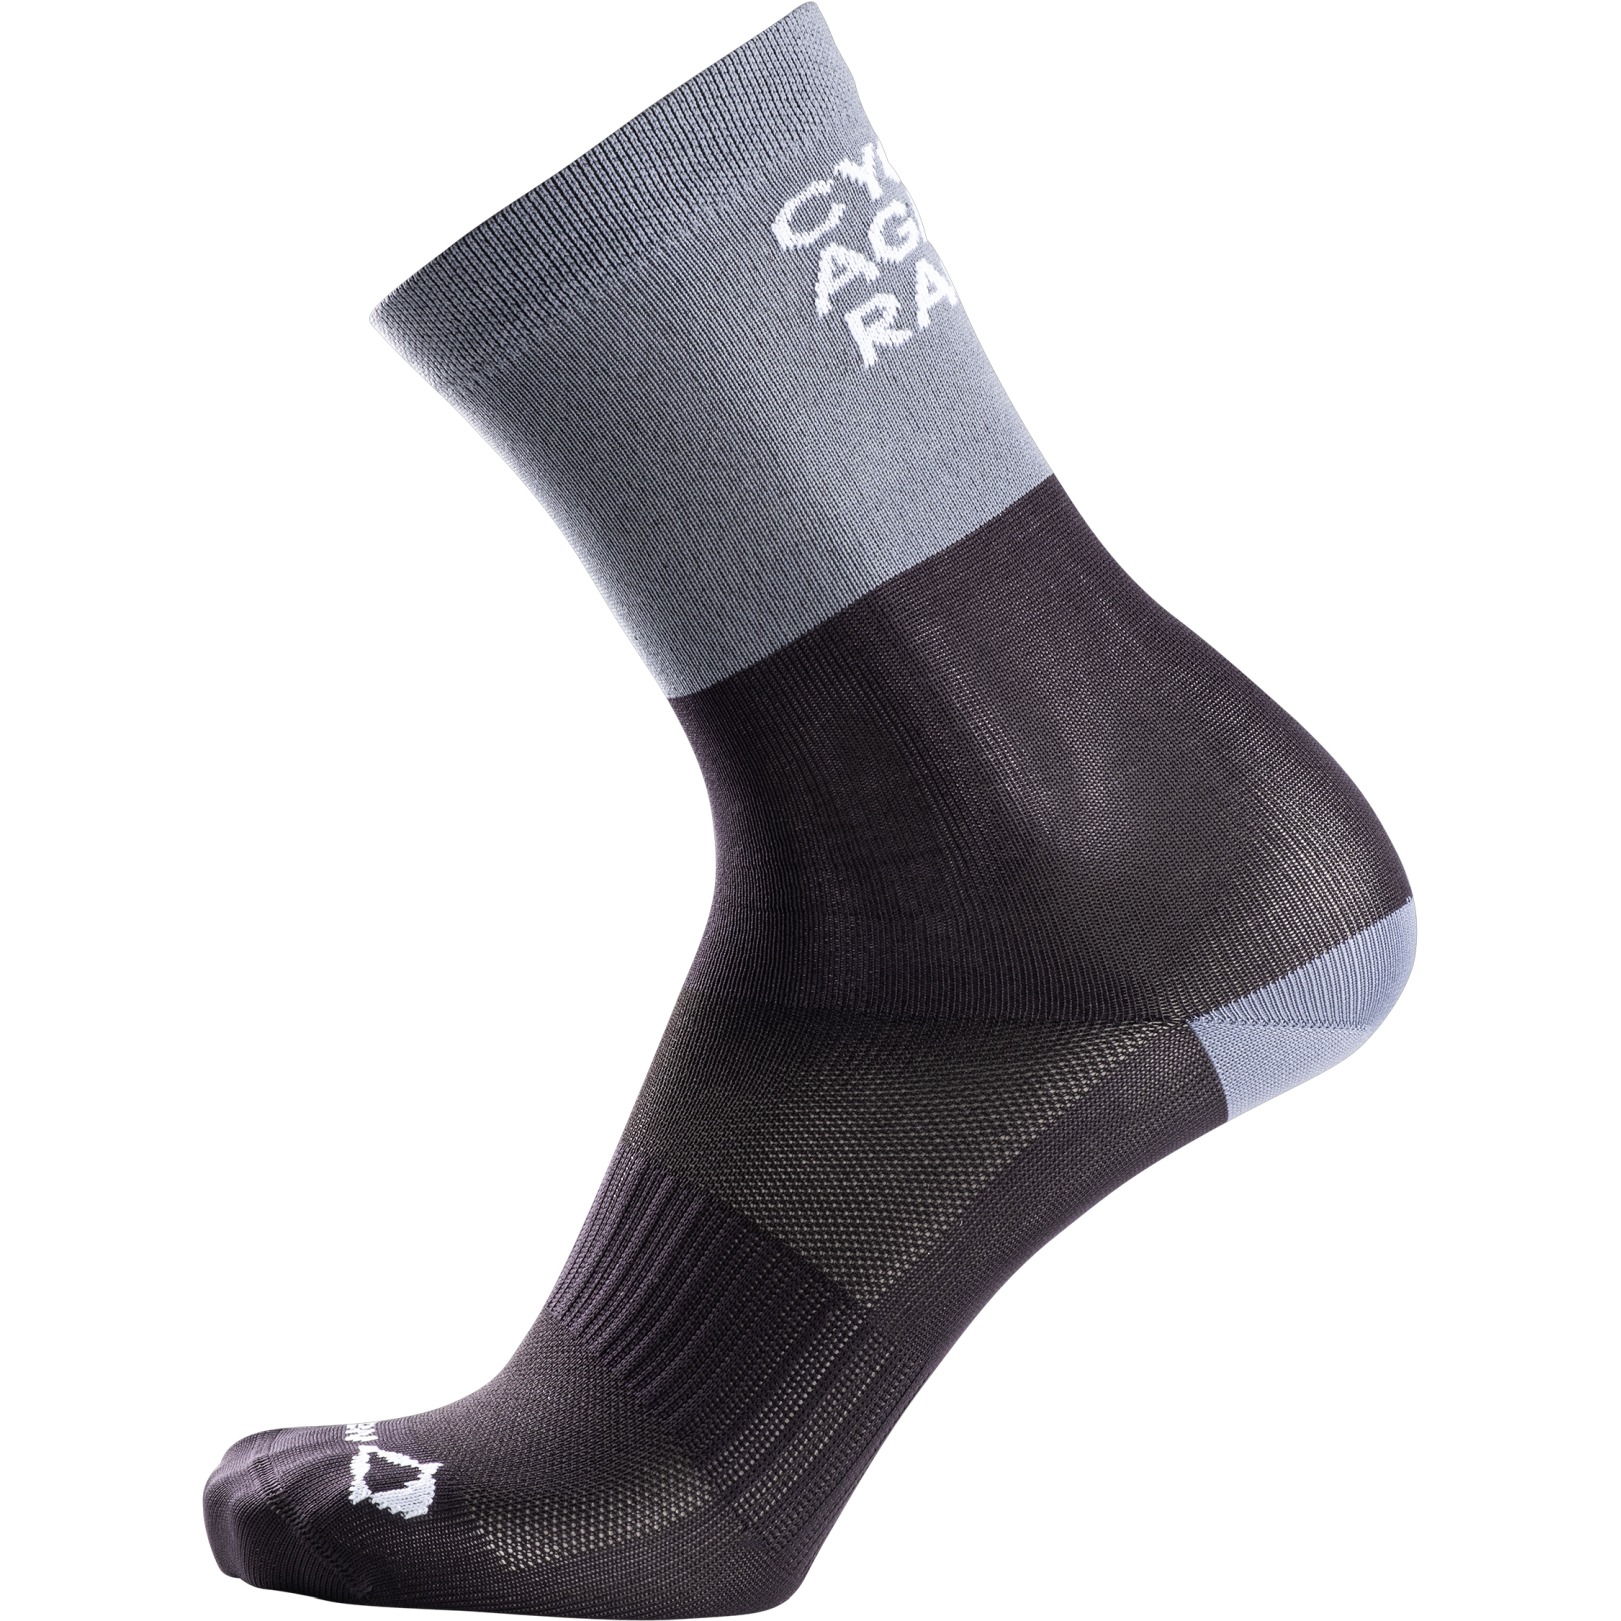 Productfoto van Nalini New Funny Sokken - zwart/grijs 4010